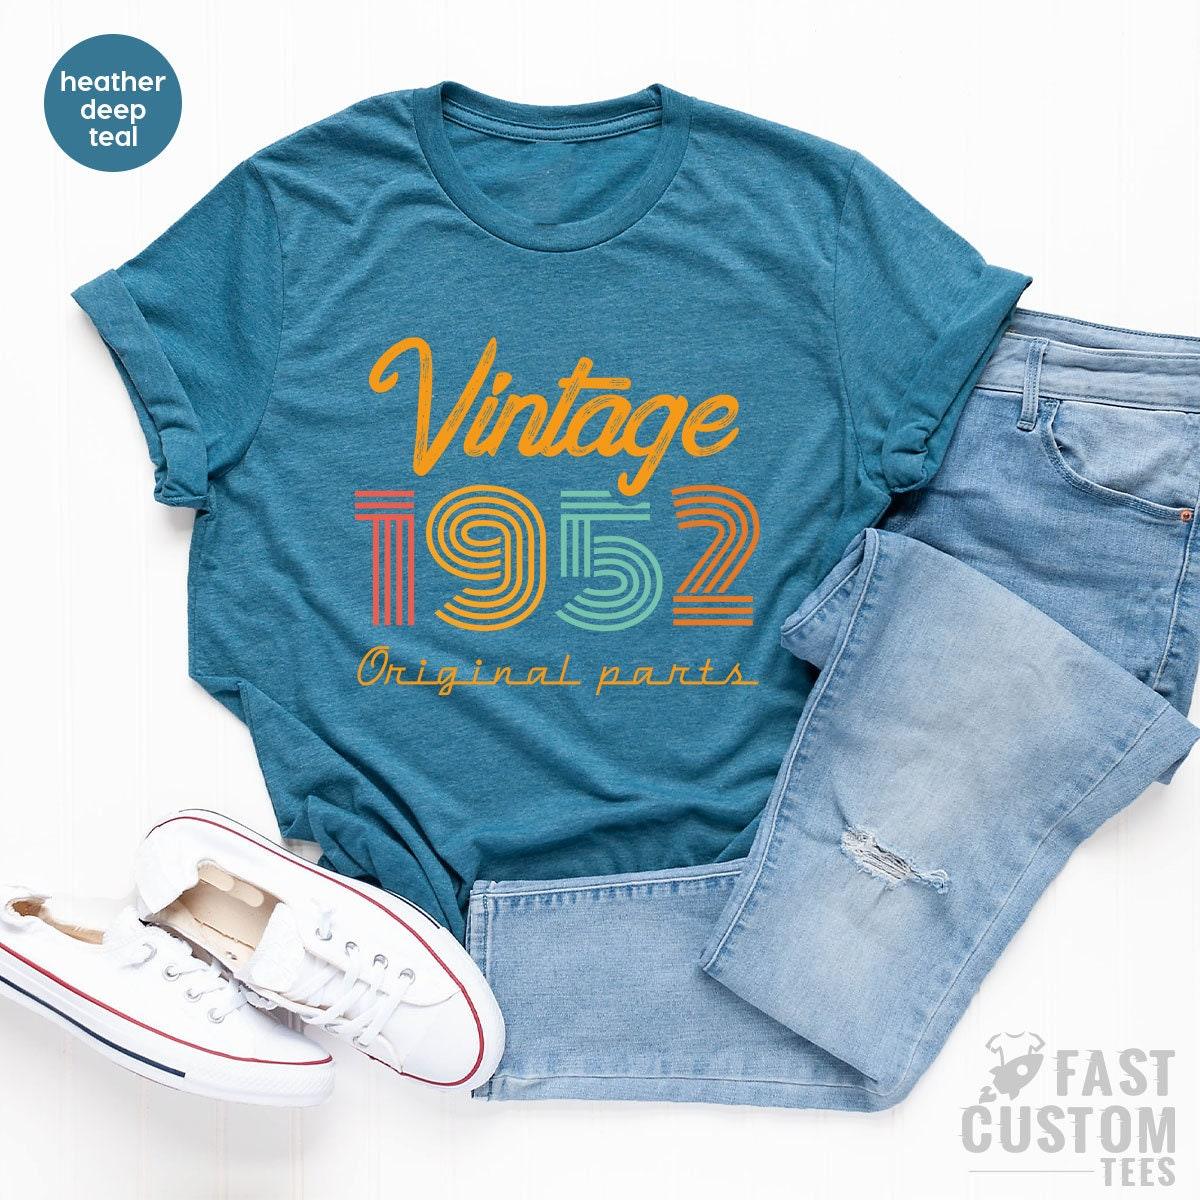 69th Birthday Shirt, Vintage T Shirt, Vintage 1952 Shirt, 69th Birthday Gift For Women, 69th Birthday Shirt Men, Retro Shirt, Vintage Shirts - Fastdeliverytees.com